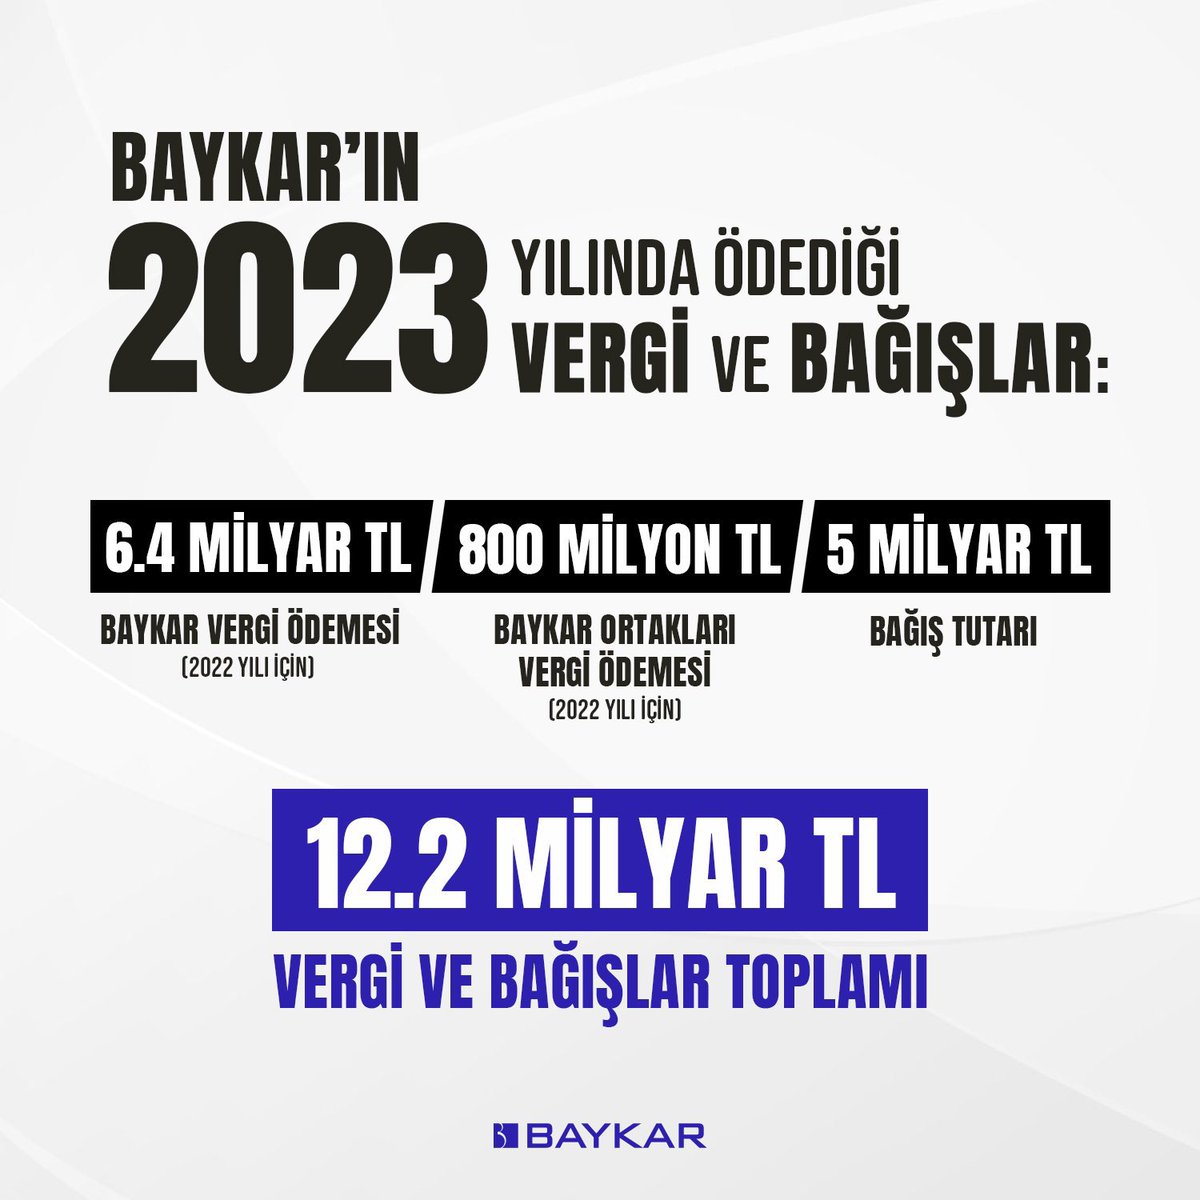 #SıkçaSorulanSorular Baykar vergi ödemiyor mu? Baykar 2023 yılında ülkemize vergi ve bağış yoluyla toplamda 12.2 milyar TL doğrudan katkı sağlamıştır. Baykar, 2023'te 6.4 milyar lira ile Türkiye'nin en yüksek vergi ödeyen firmalarından biri oldu. Ayrıca firma ortakları (Selçuk…